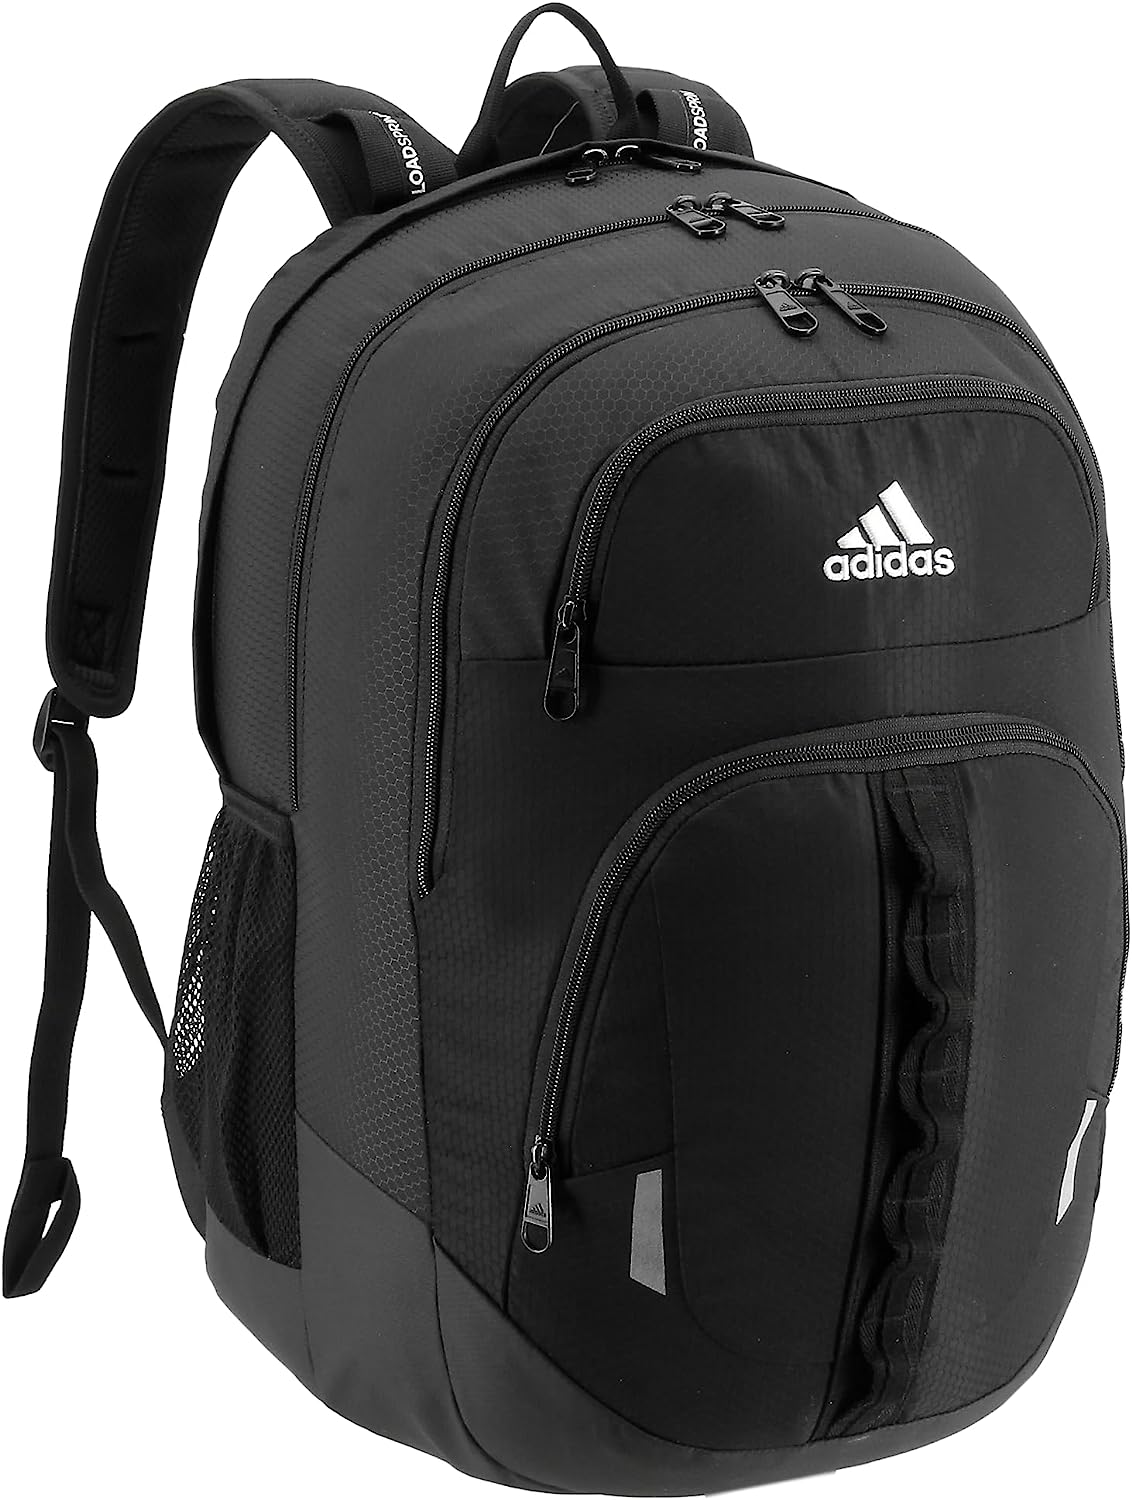 adidas Unisex Prime Backpack, Black/White, One Size One Size Black/White - image 1 of 3